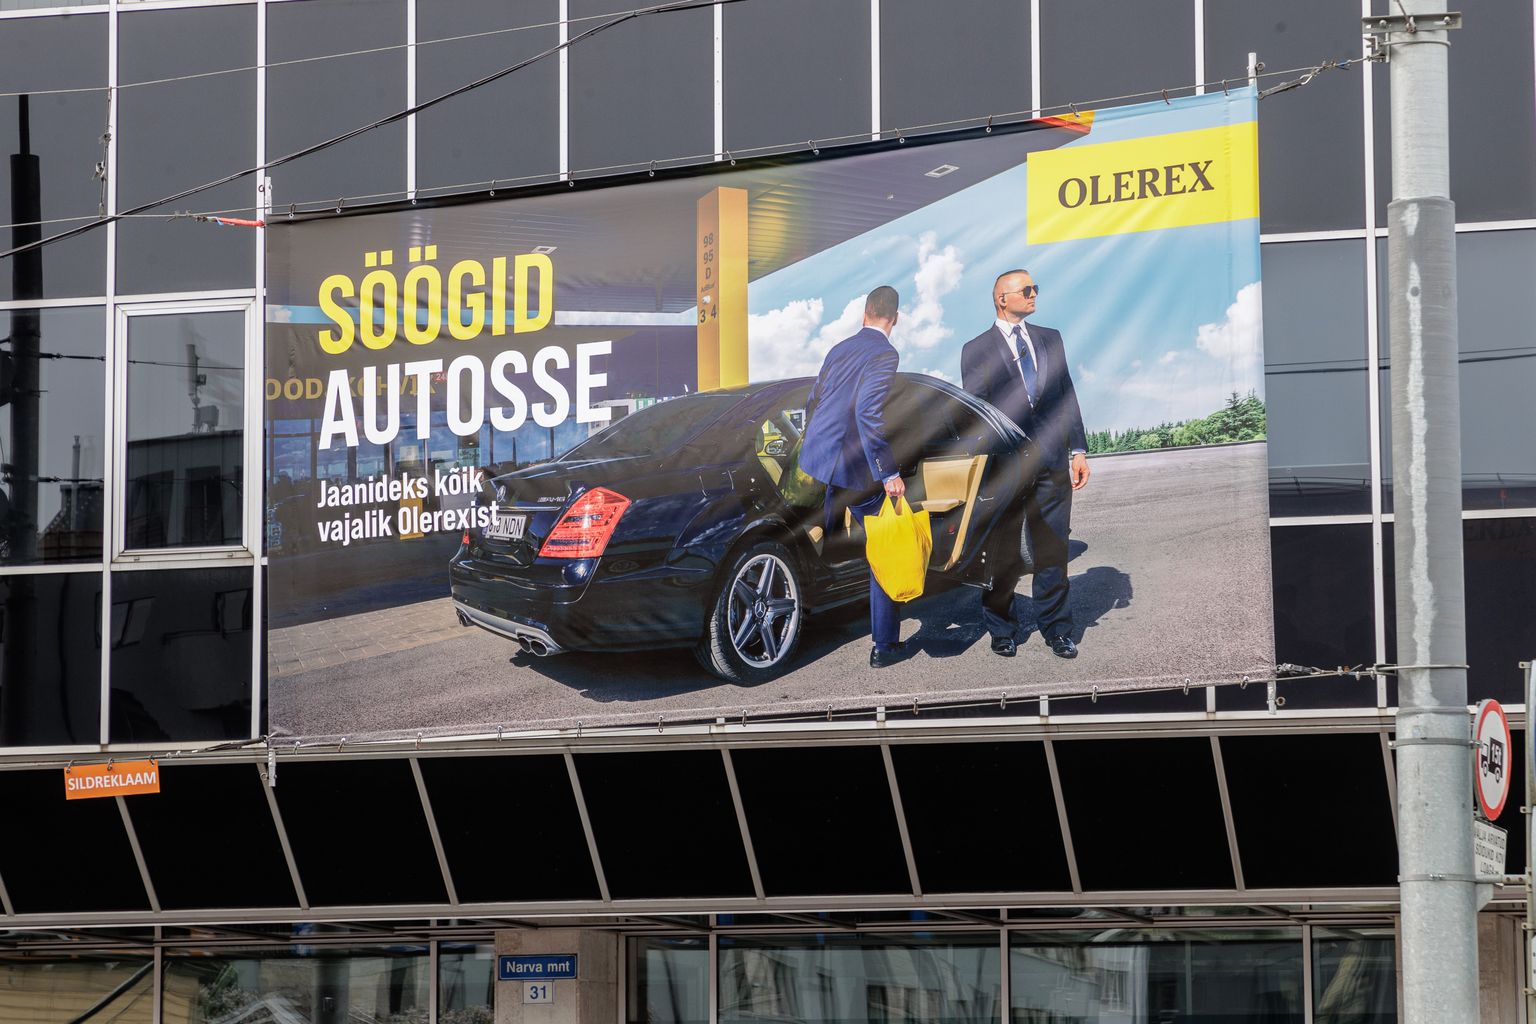 14.06.2022, Tallinn. Olerexi reklaam "Söögid autosse".